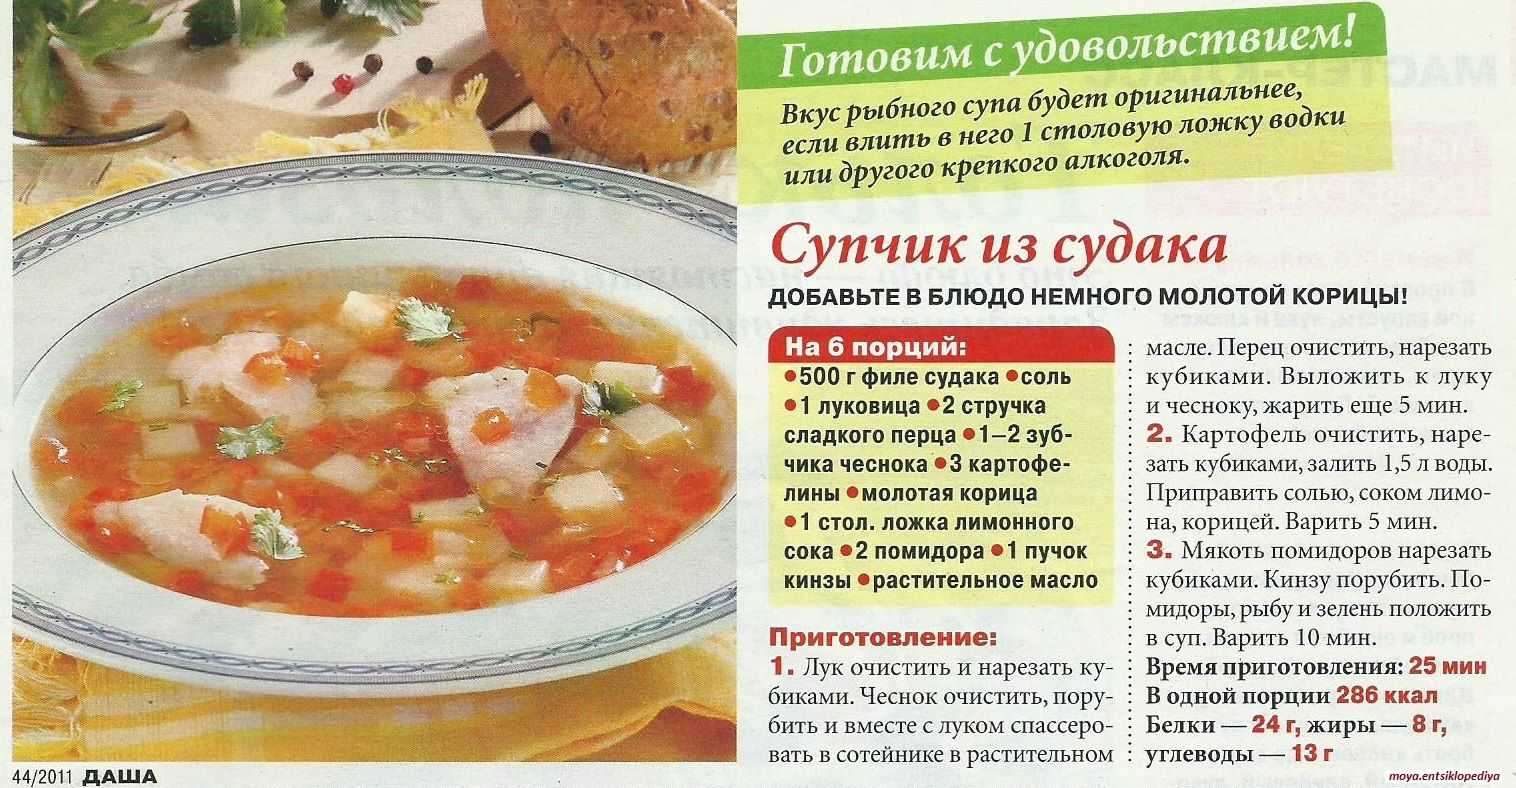 Раскладка супа. Рецепты супов в картинках. Рецепты супов бульонов. Супы в общепите рецепты. Суп картофельный с судаком.